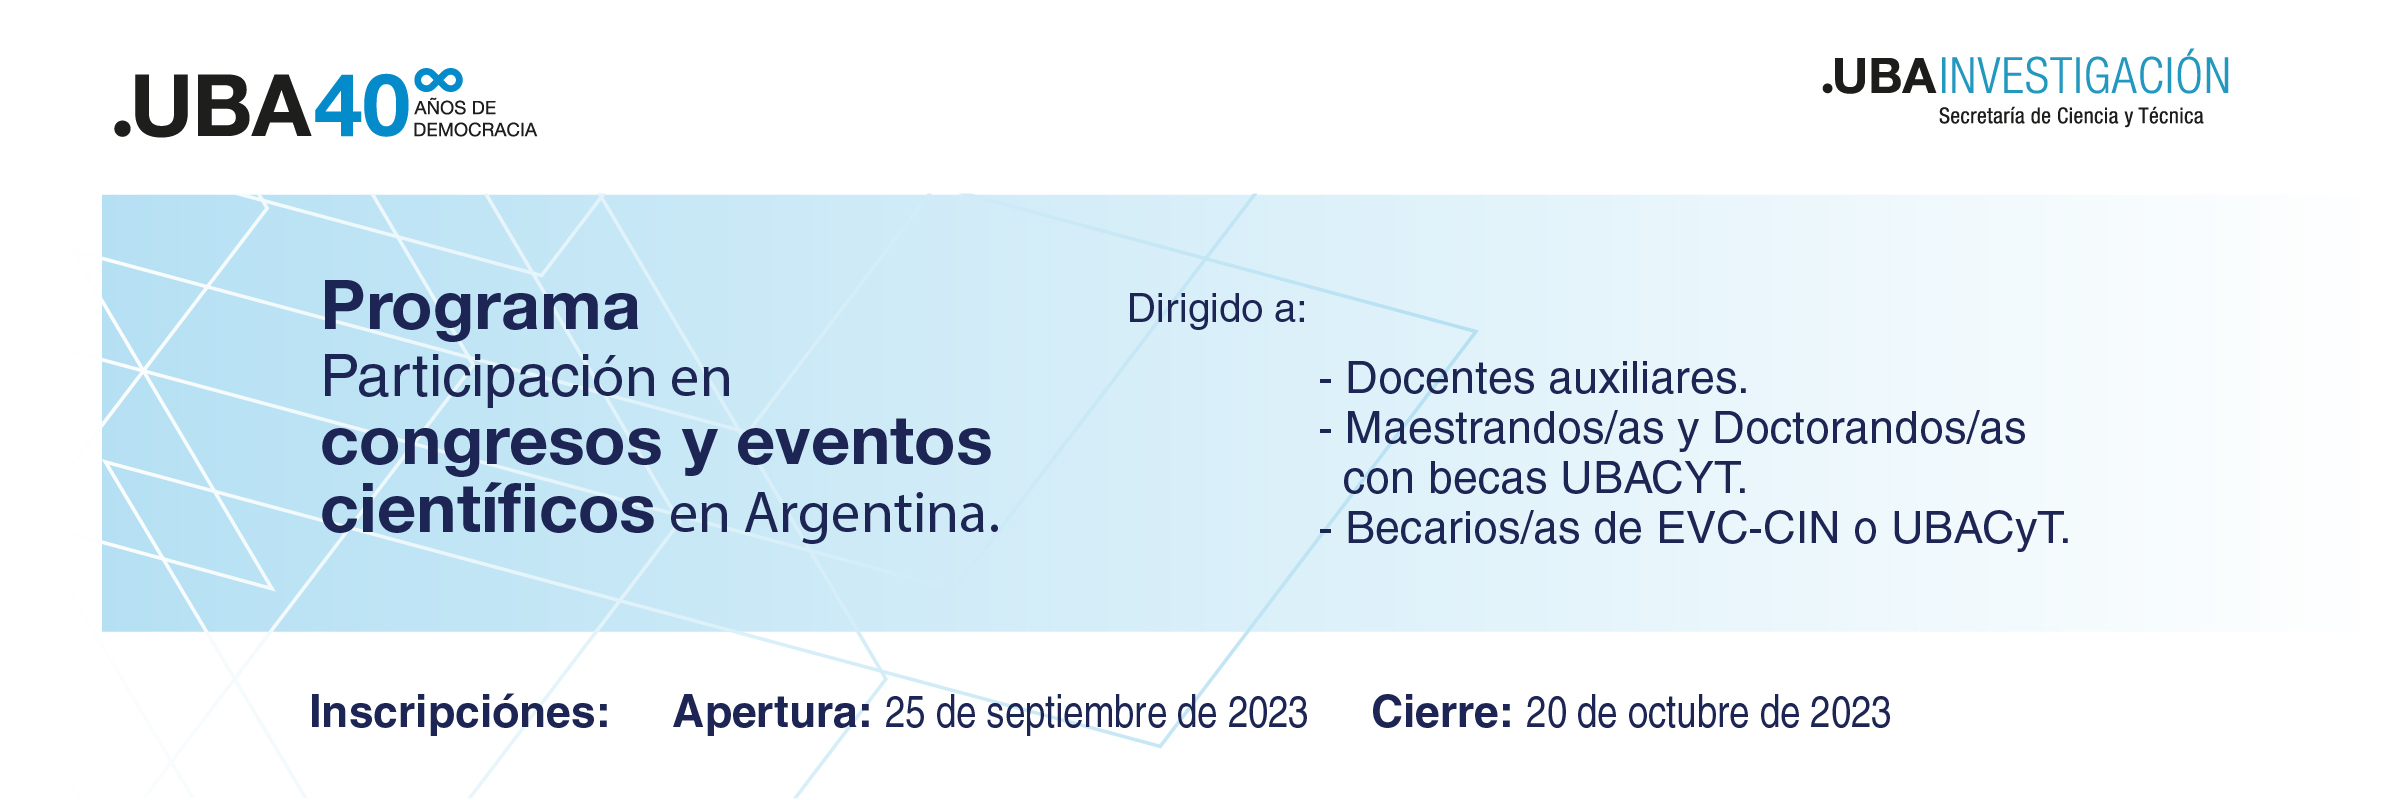 Programa para la participación en congresos y eventos científicos en Argentina